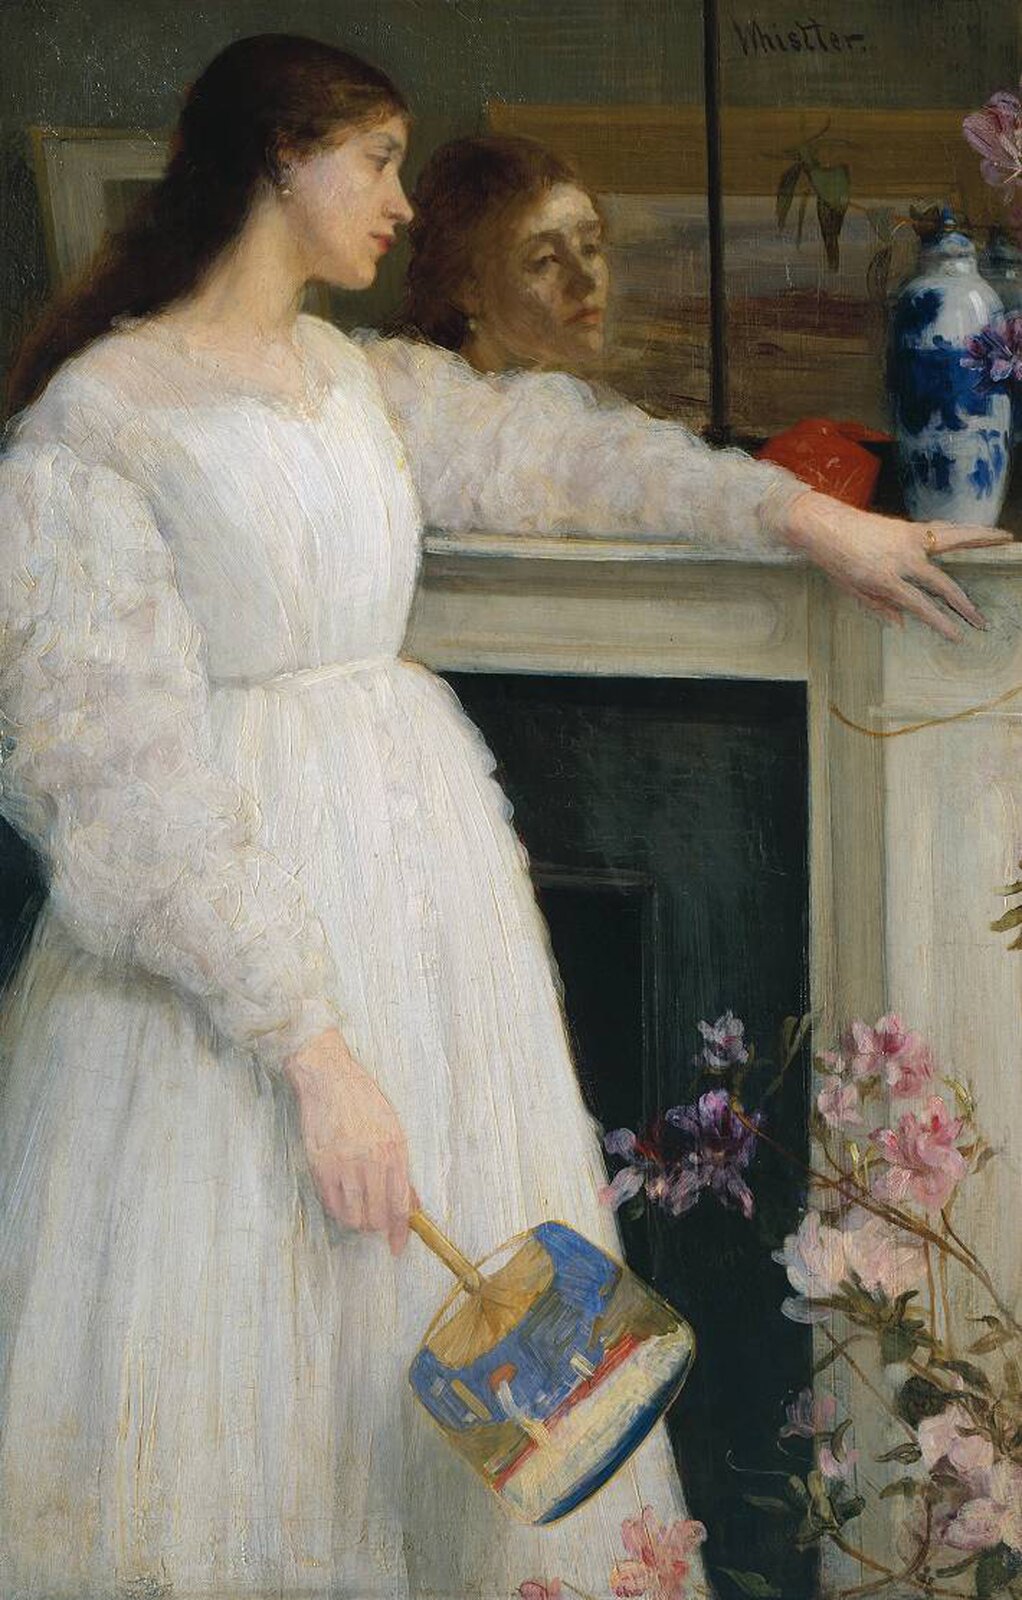 Ilustracja o kształcie pionowego prostokąta przedstawia obraz Jamesa McNeilla Whistlera „Symfonia w bieli 2: Biała dziewczynka”. Ukazuje młodą dziewczynę w długiej, białej sukni. Stoi bokiem, lewą rękę ma położoną na  kominku, na którym stoi wazon. Jej twarz odbija się w wiszącym nad kominkiem lustrze. Dziewczyna w prawej dłoni trzyma wachlarz. W dolnym rogu znajdują się różowe kwiaty.